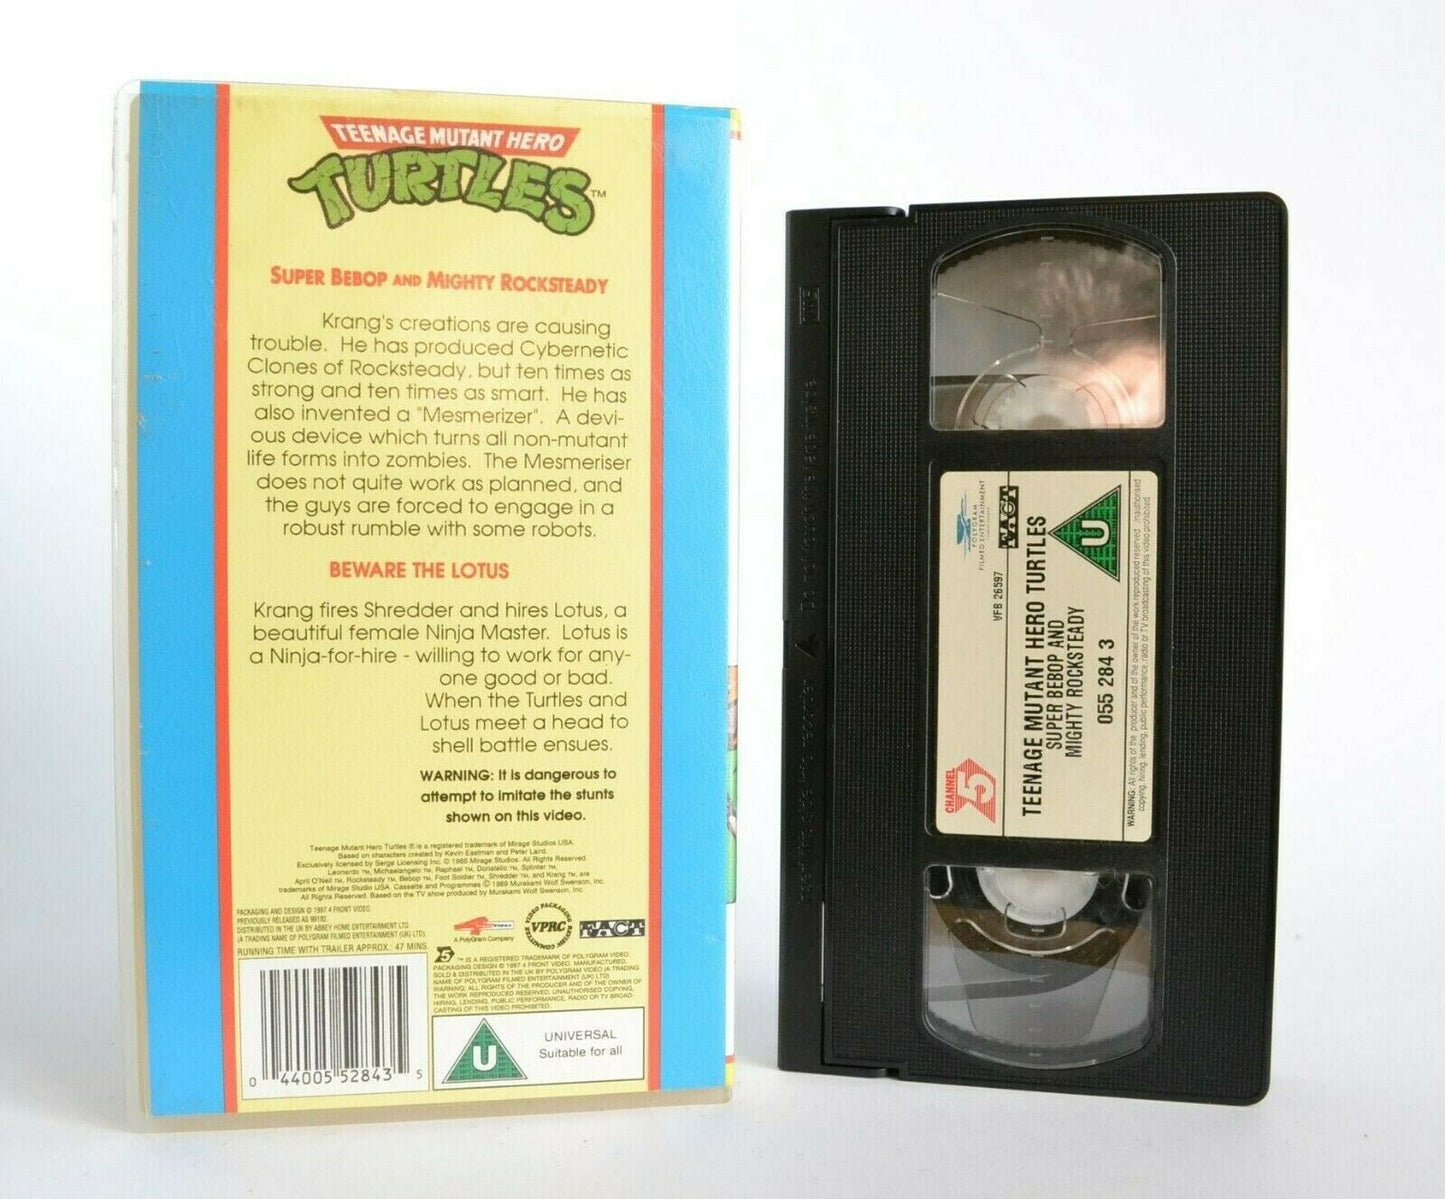 Teenage Mutant Hero Turtles: Super Bebop And Mighty Rocksteady - Kids - Pal VHS-